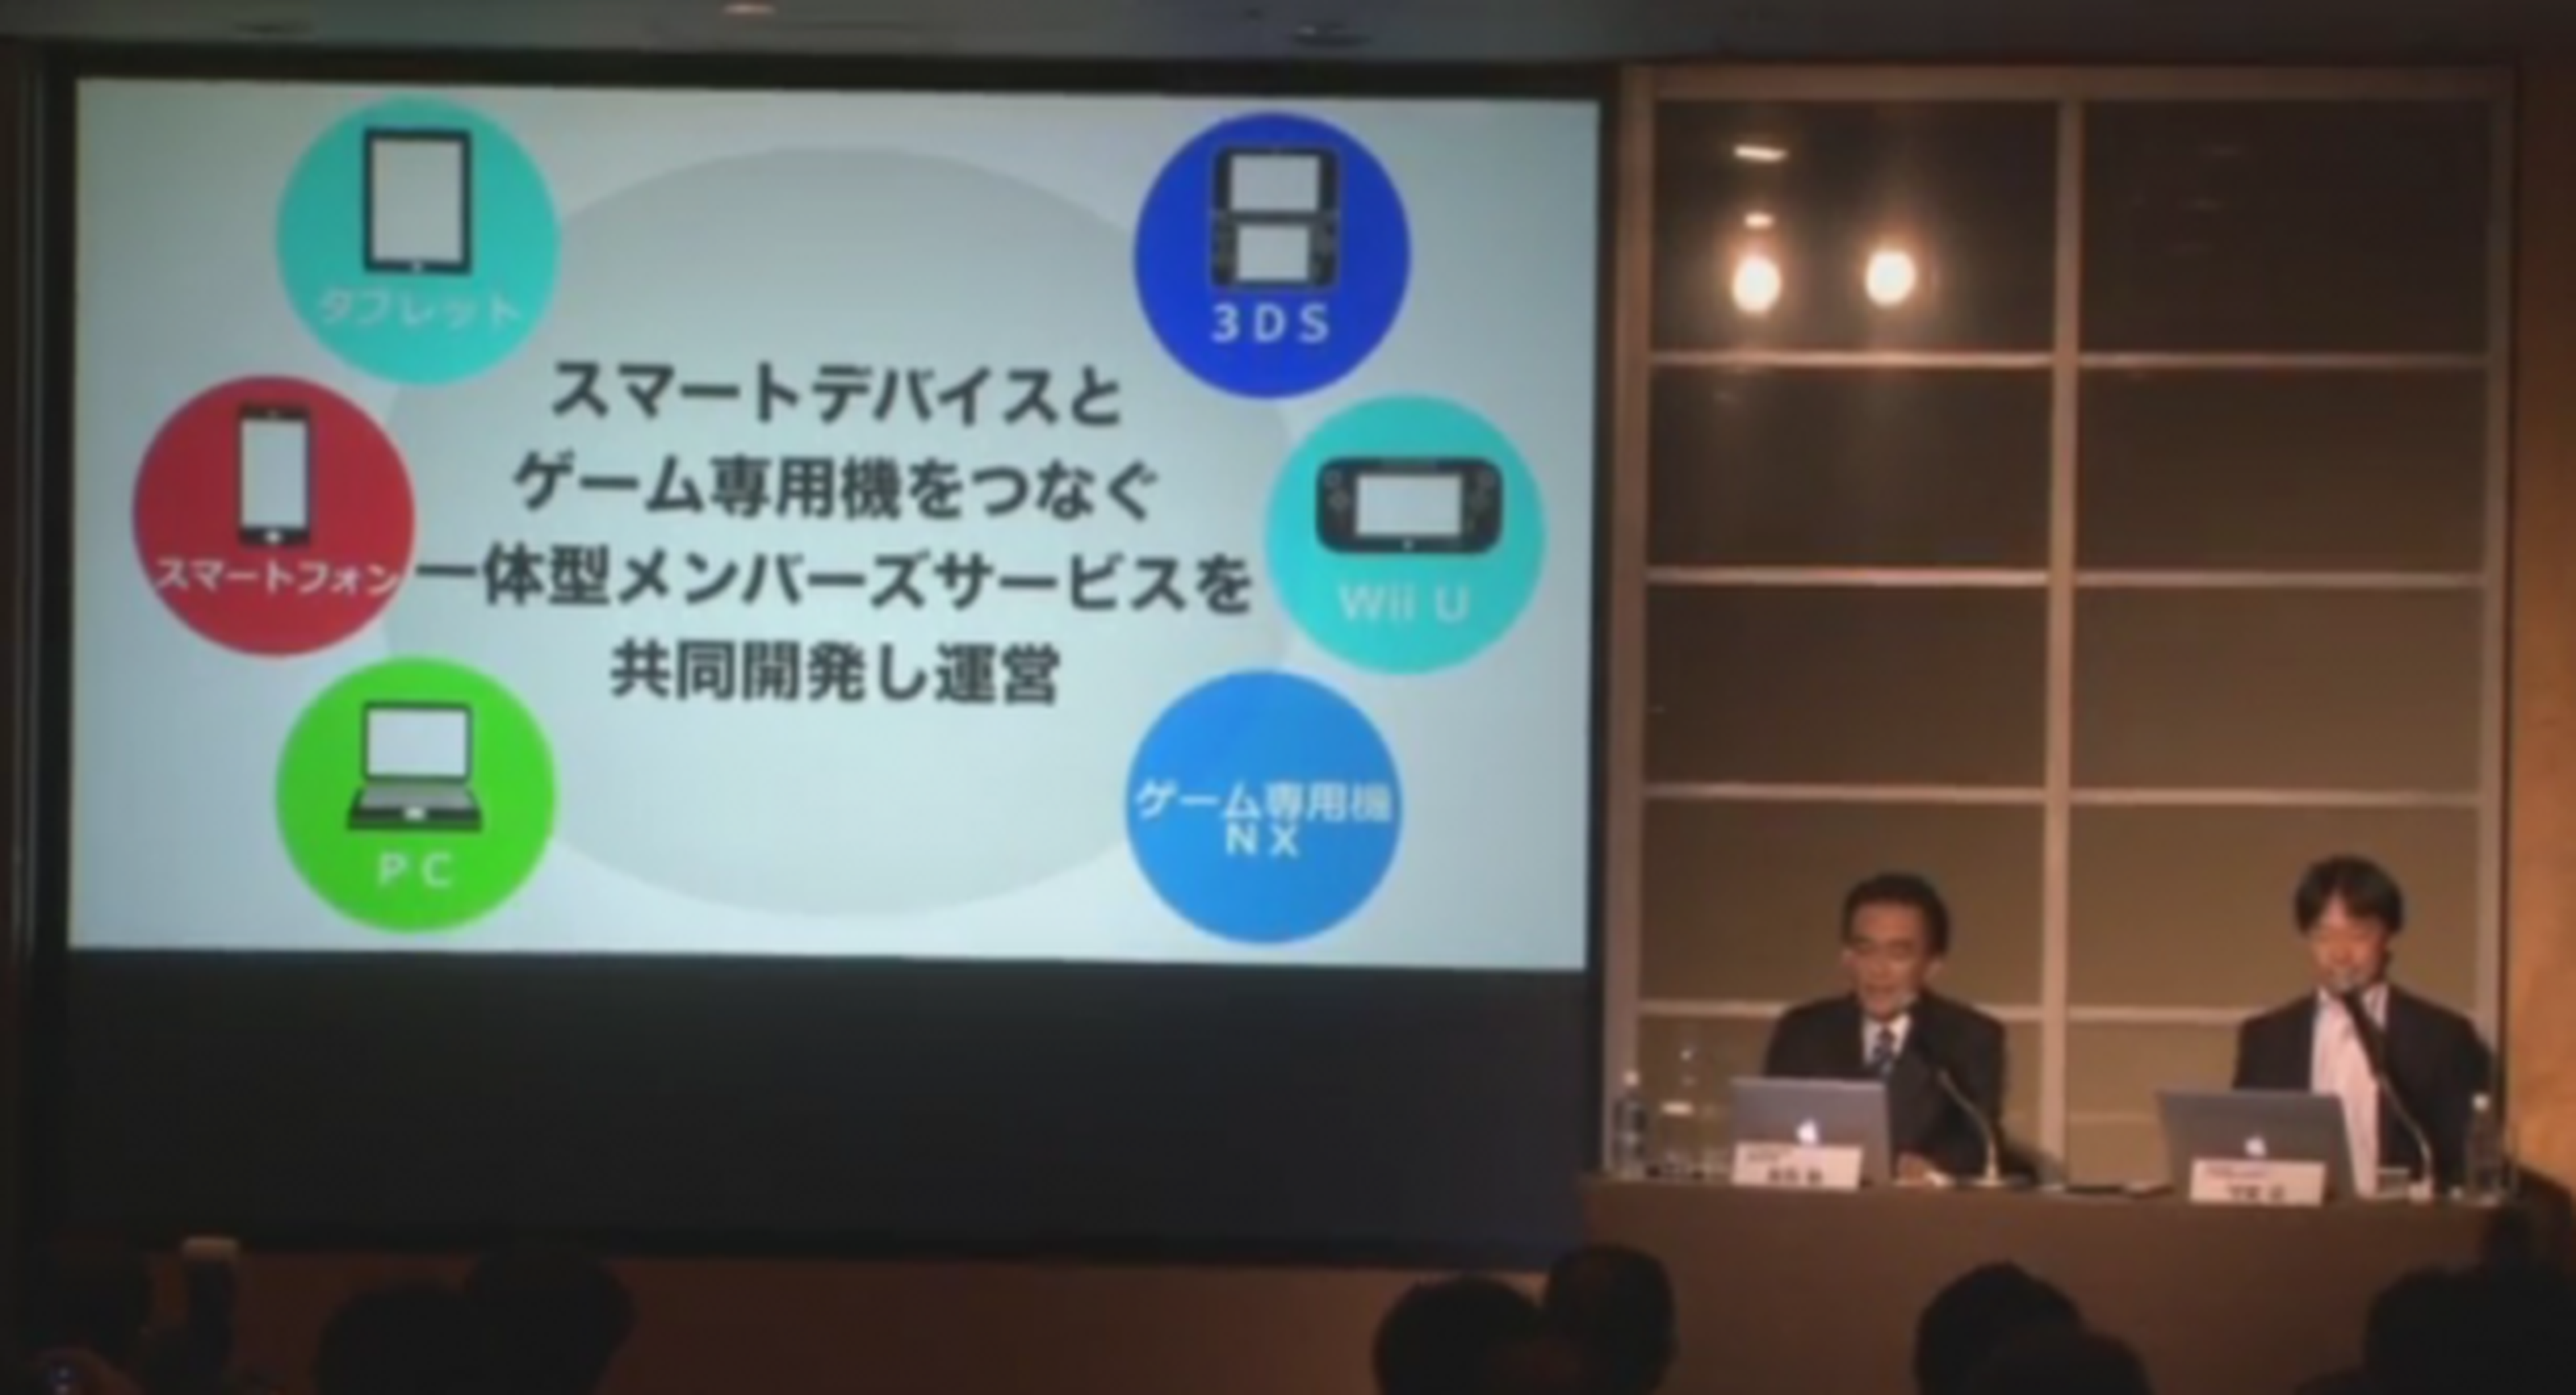 Nintendo NX no será un reemplazo de Wii U o 3DS, según Iwata